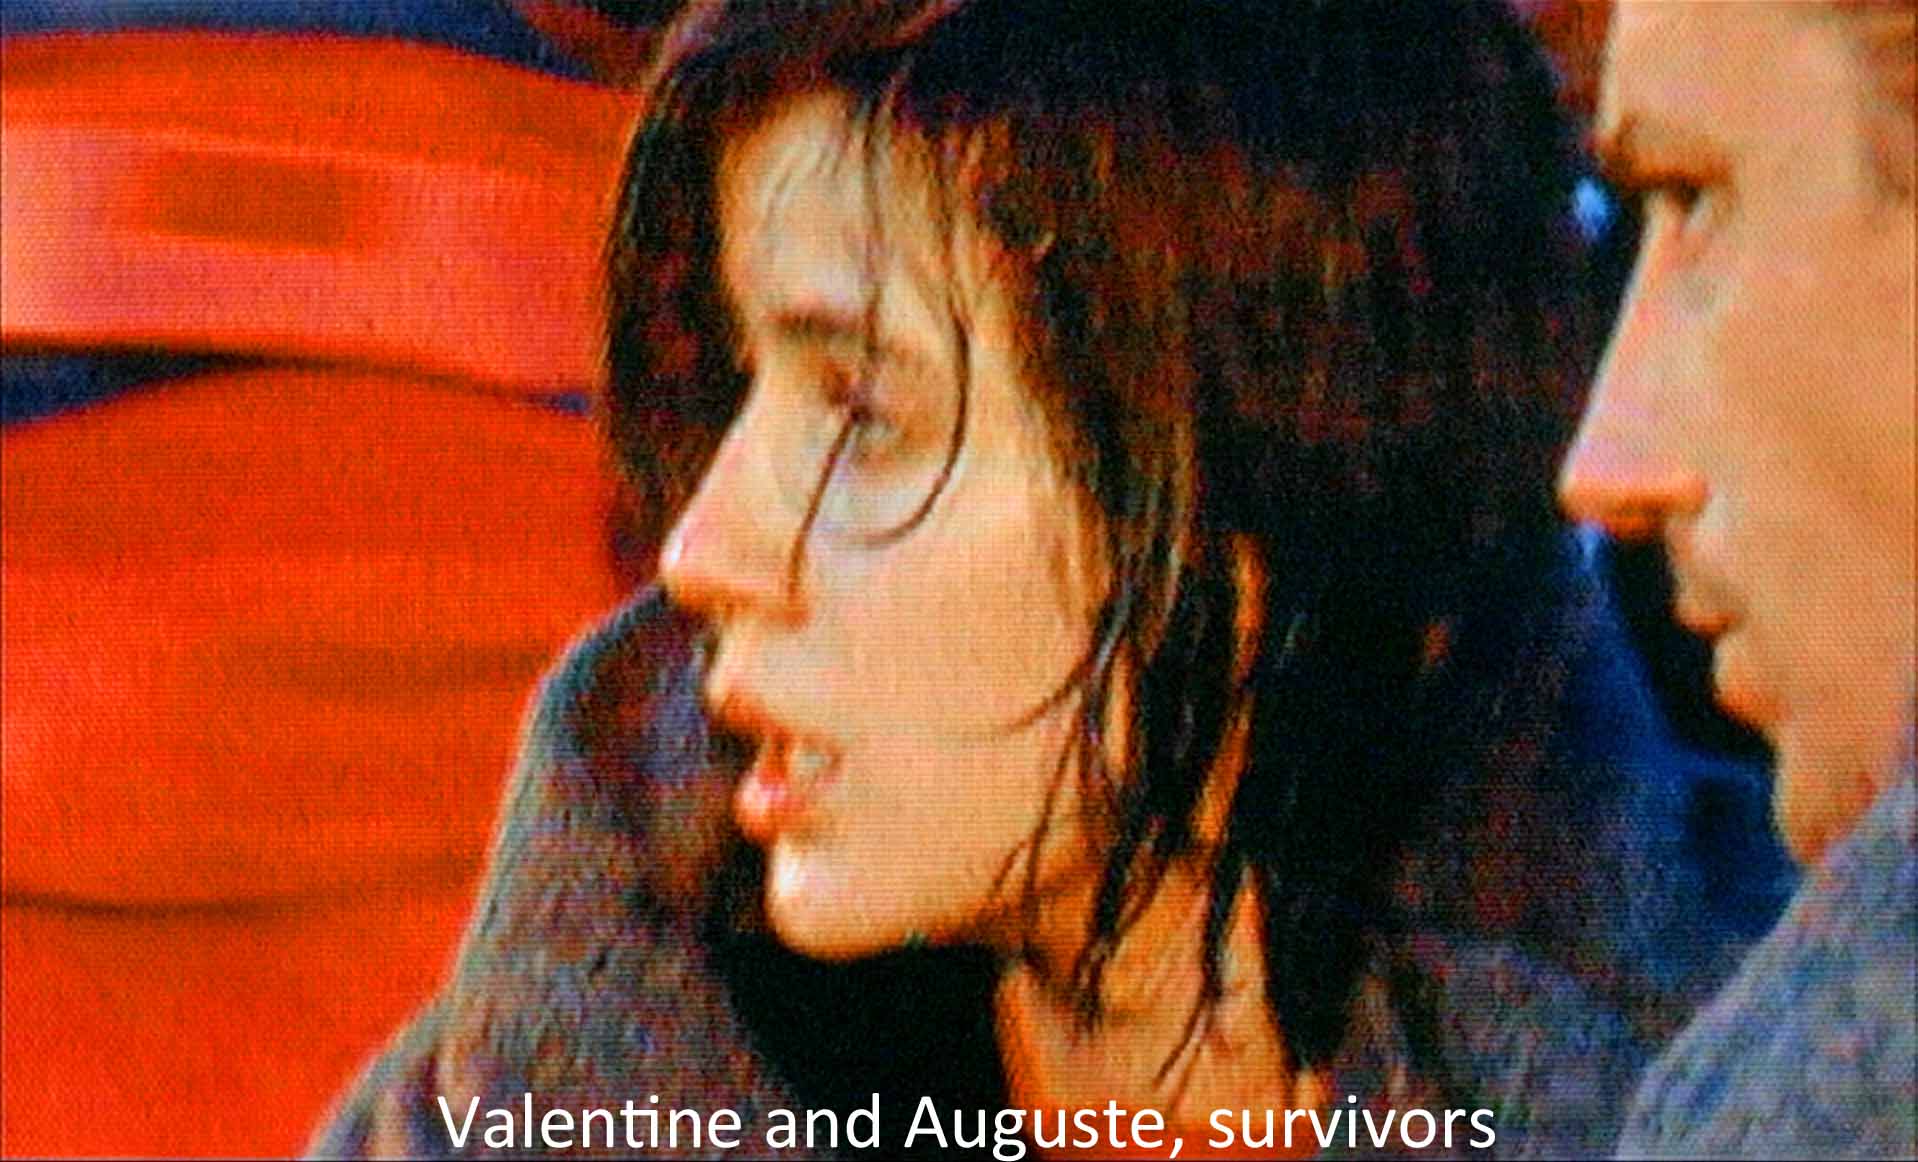 Valentine and Auguste, survivors